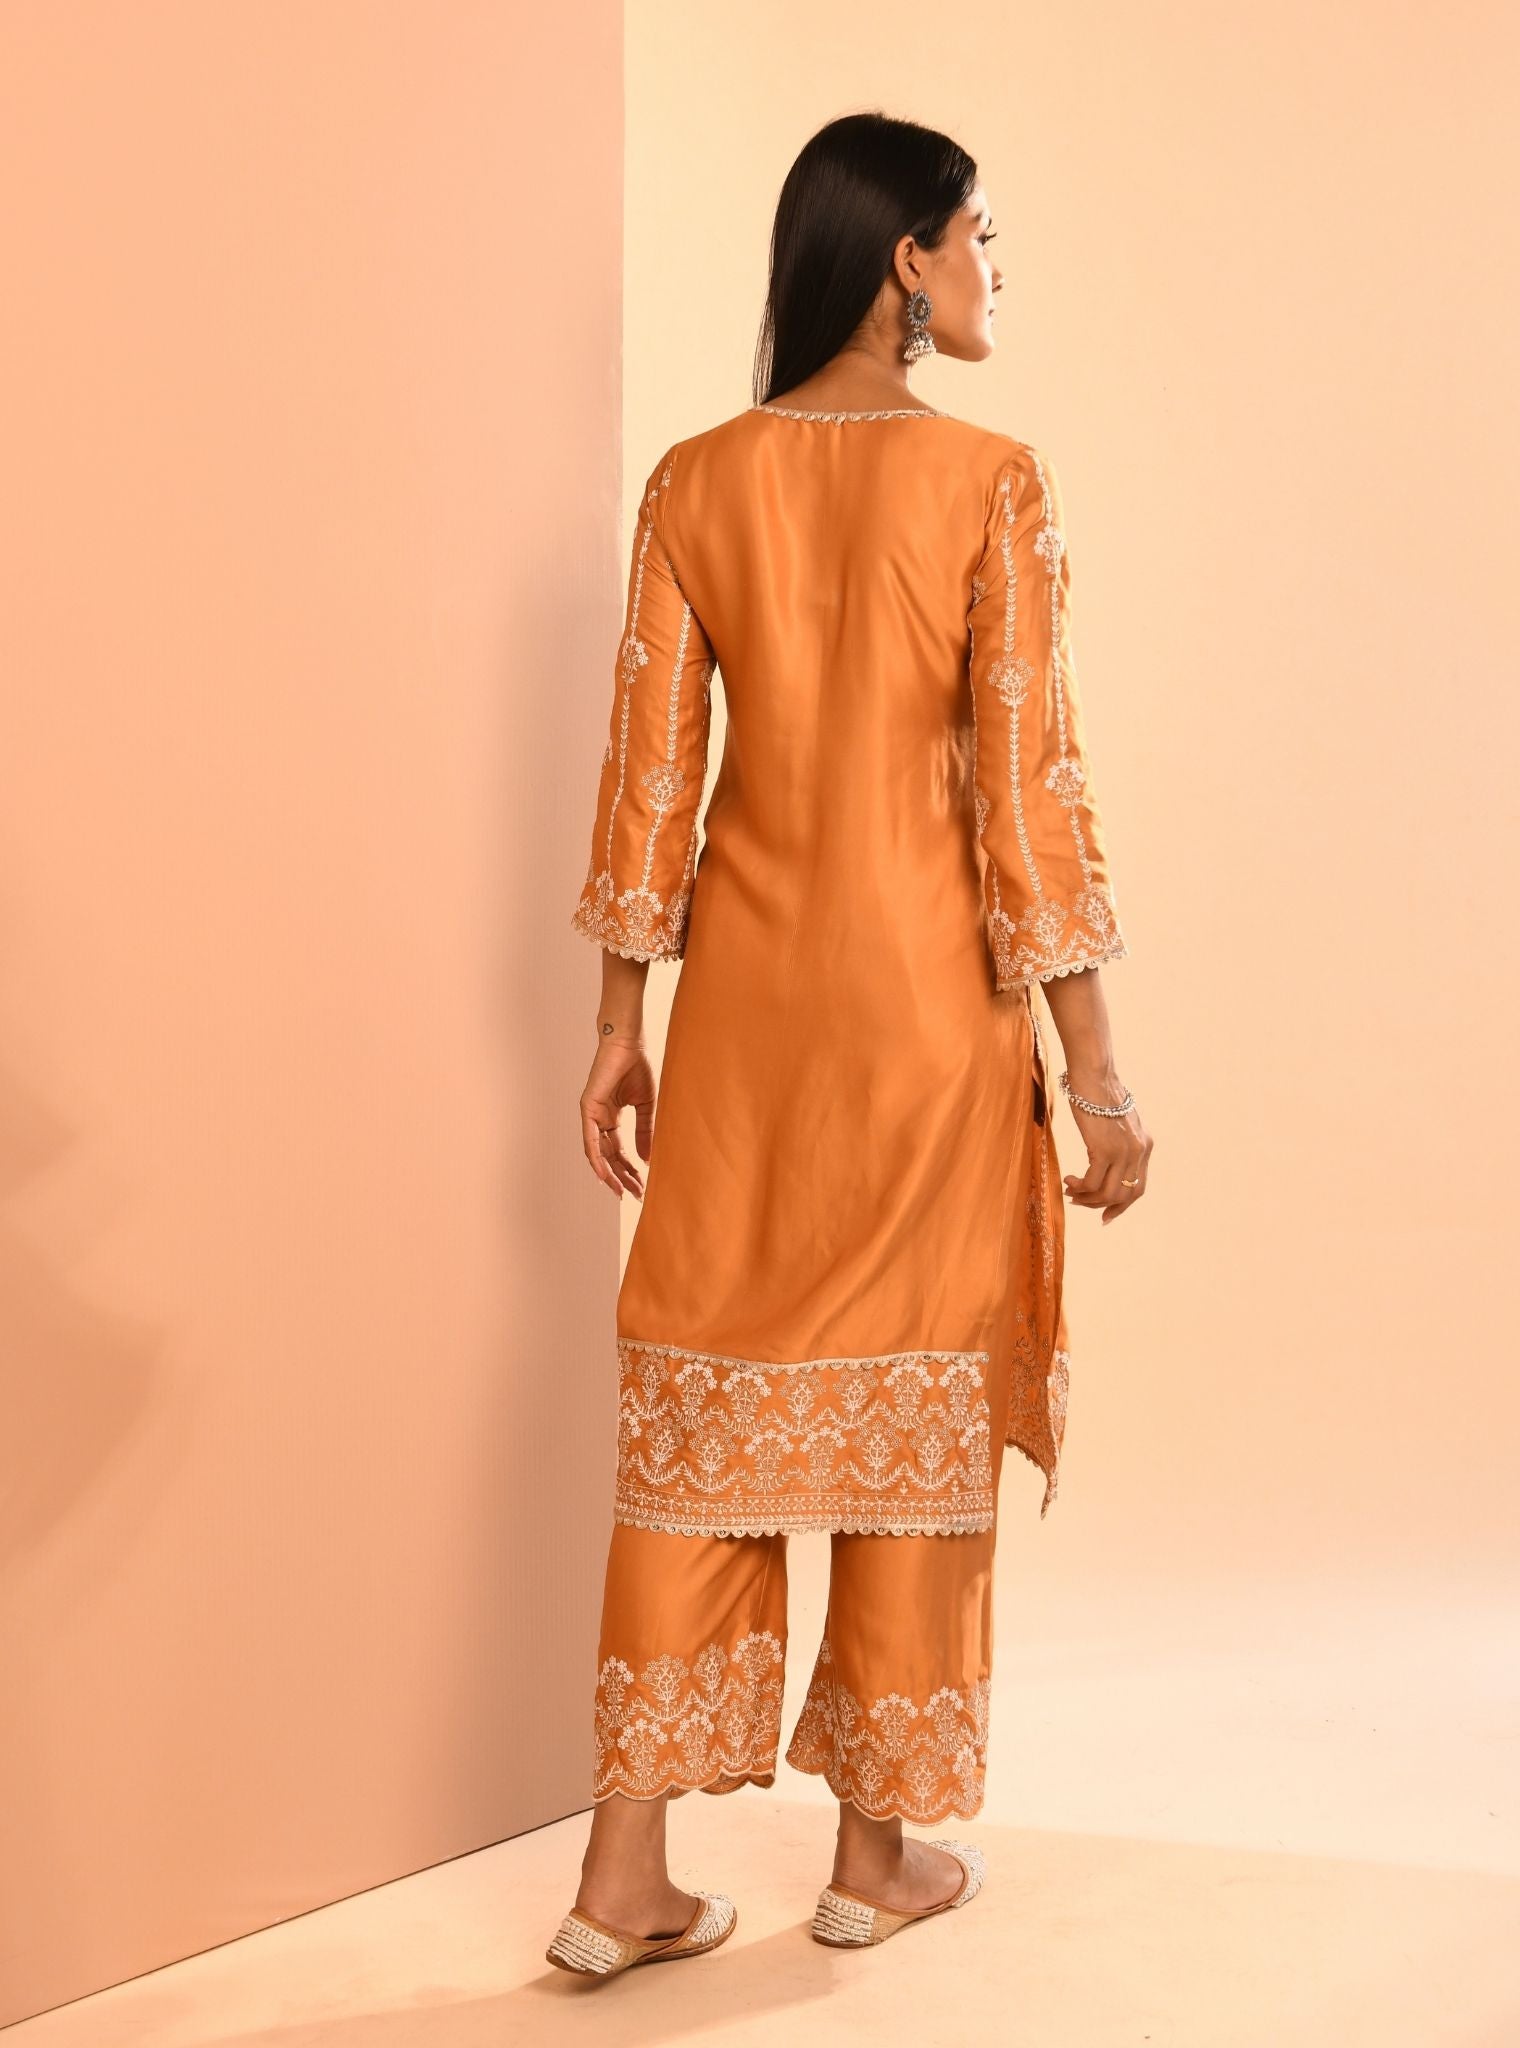 Top 90 Ways To Convert Old Saree Into Designer Kurti // Turn Your Old Saree  Into New Dress // Reuse - YouTube | Kurti designs, Saree jacket designs,  Recycled dress